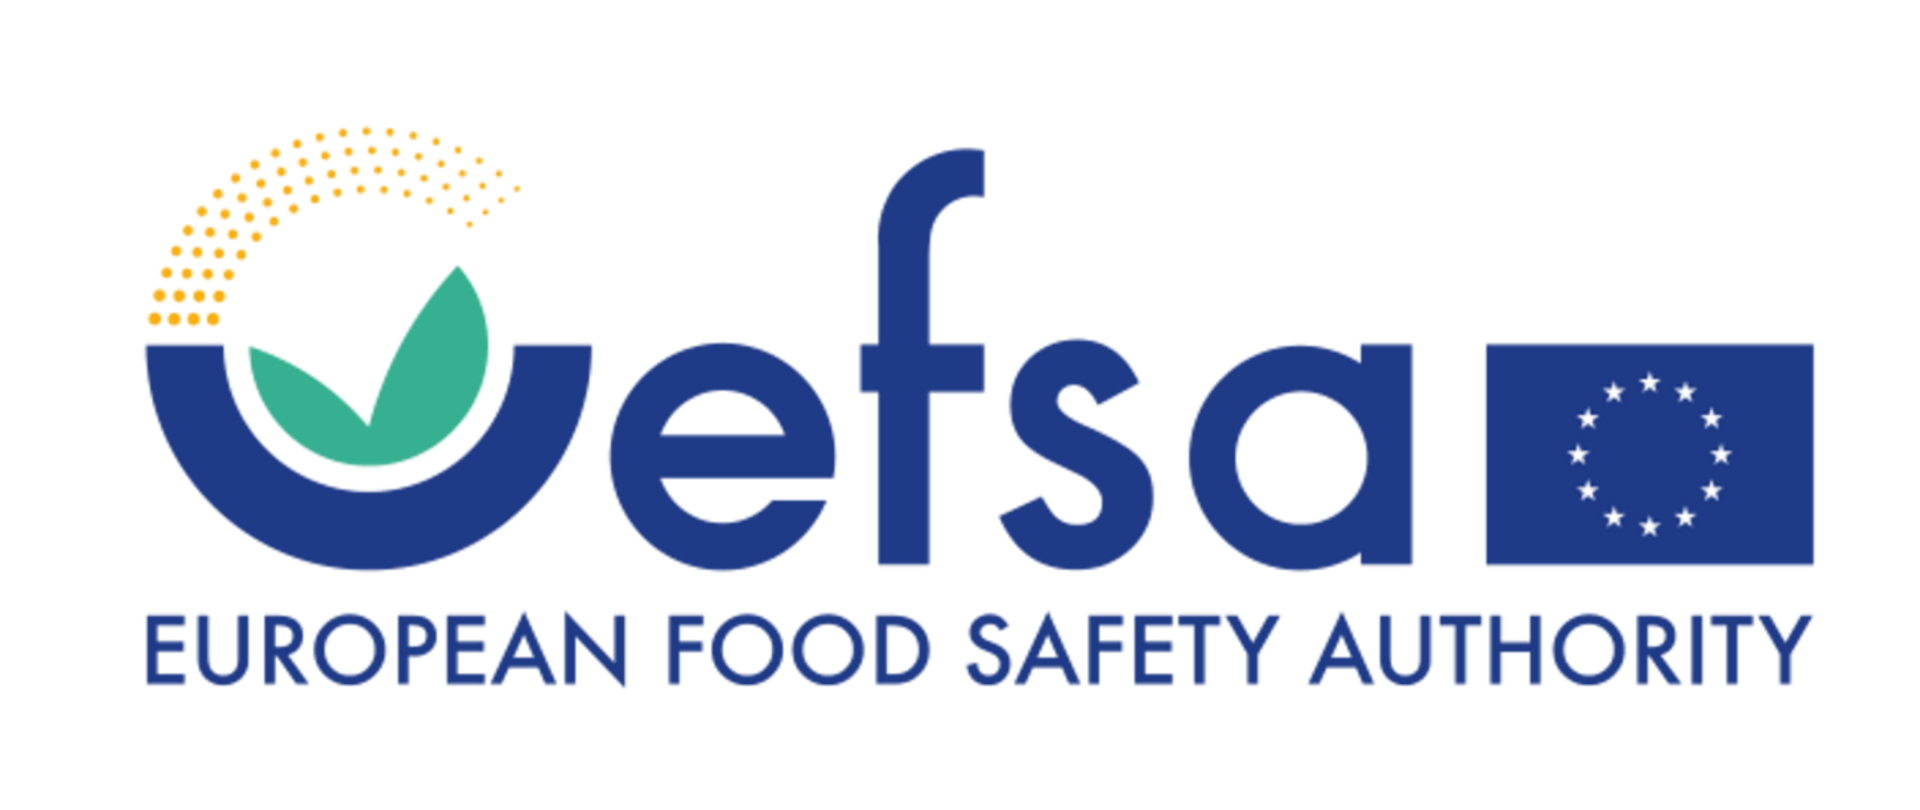 W centralnej części baneru napis niebieską czcionką: "efsa", obok, po lewej logo Unii Europejskiej, po prawej logo EFSA. Poniżej napisu rozwinięcia skórtu: European Food Safety Authority.